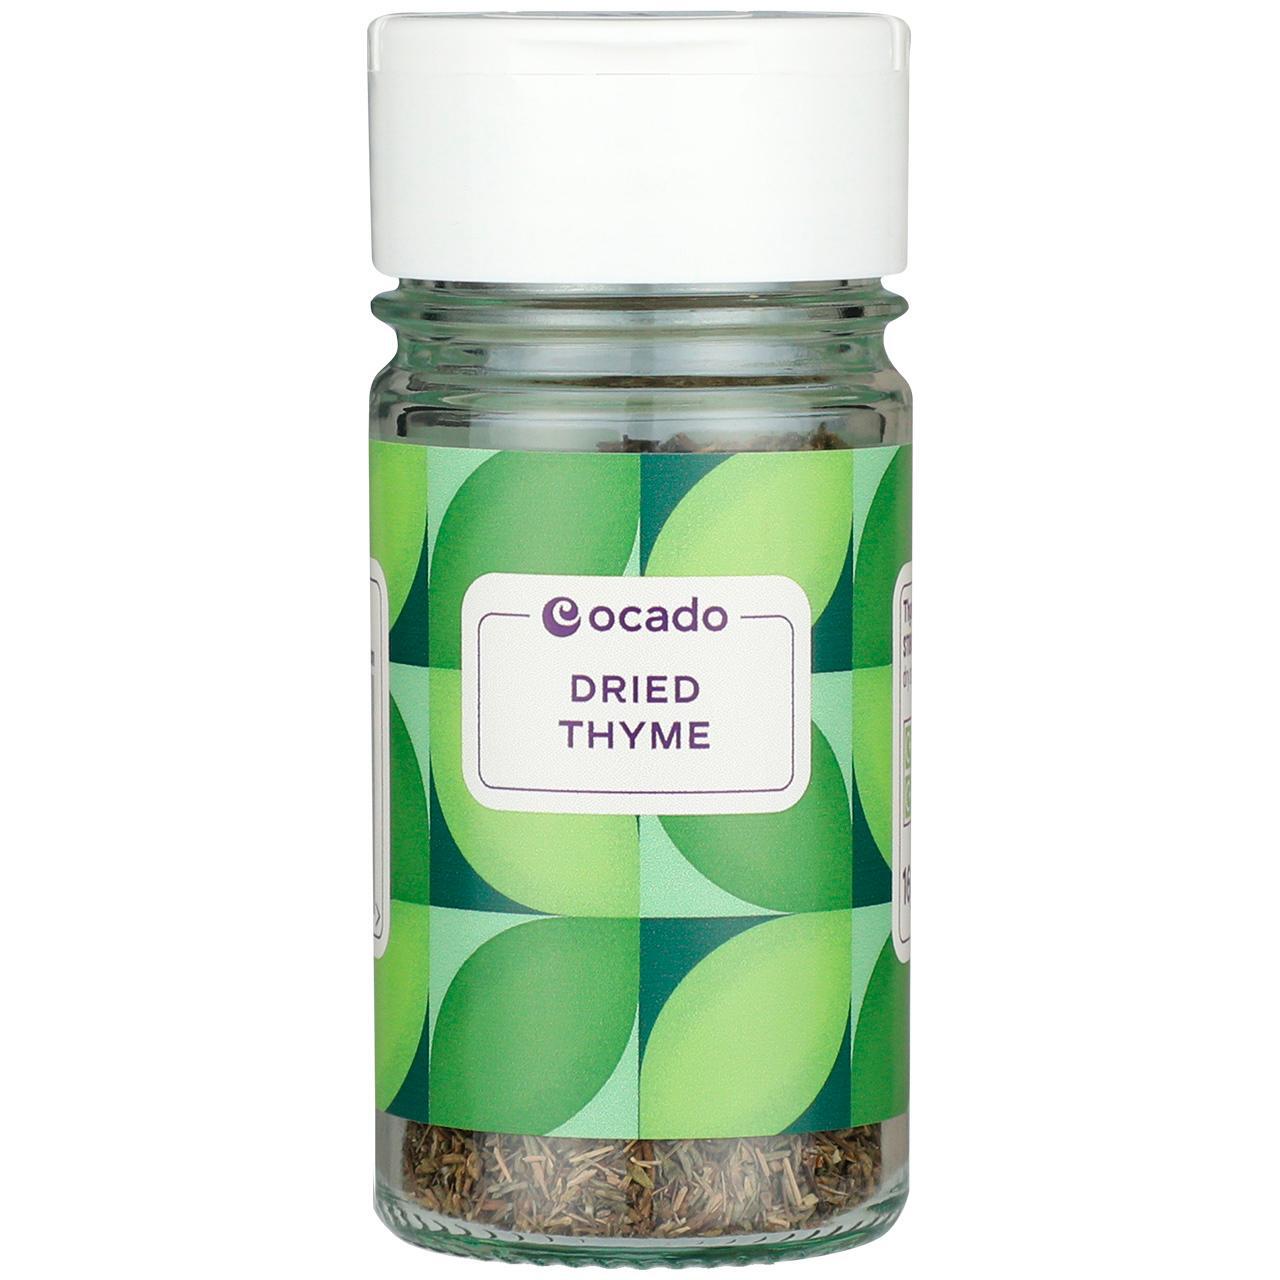 Ocado Dried Thyme 16g